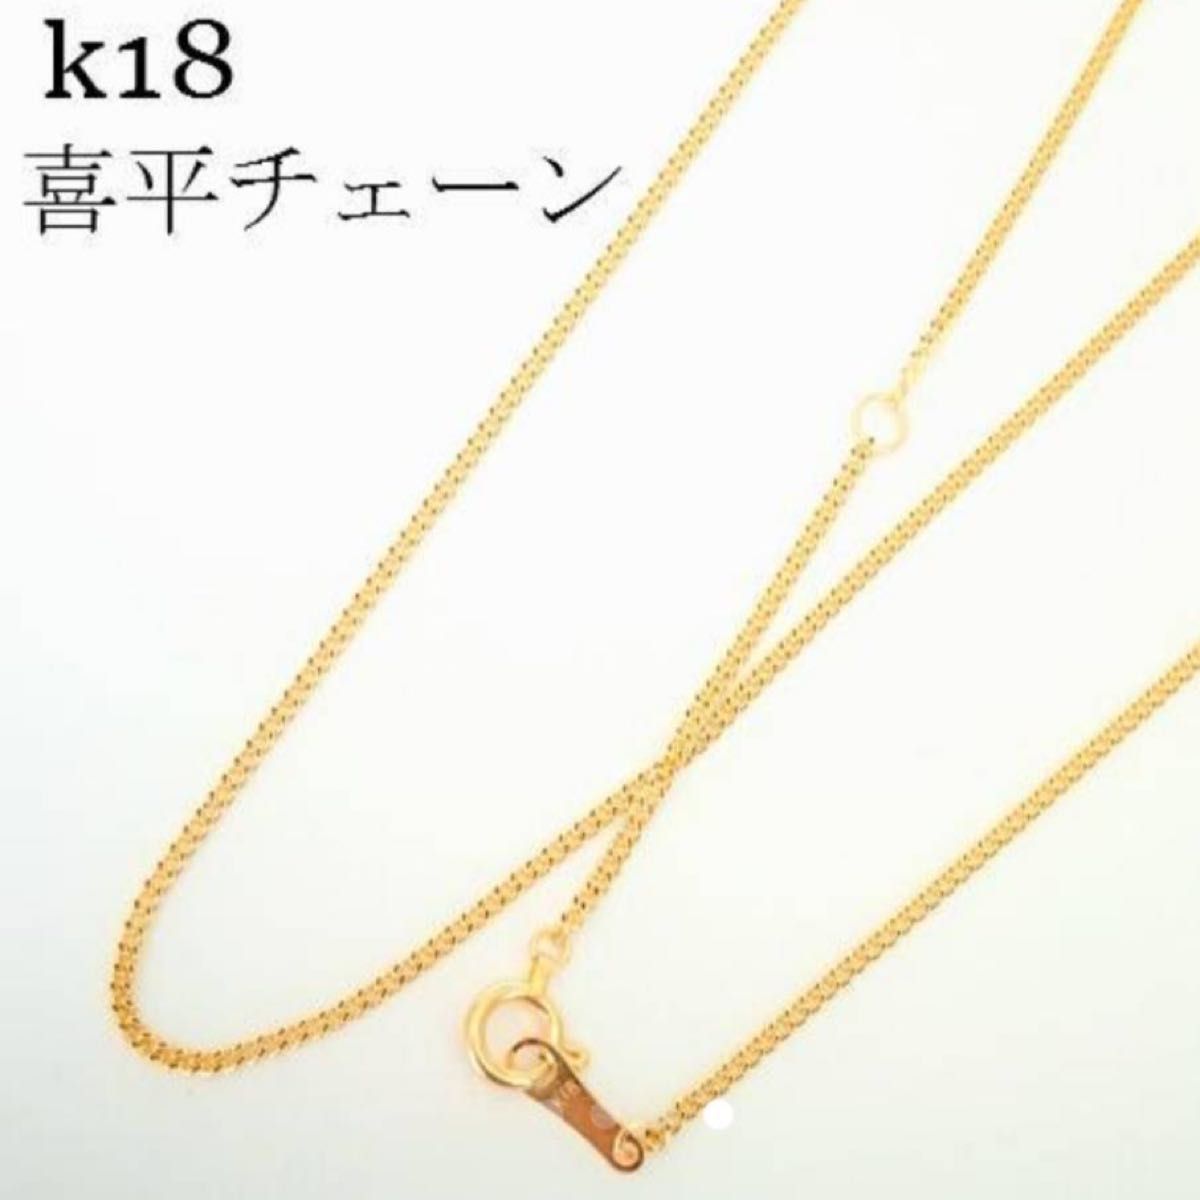 激安☆新品 k18 ネックレス 【50㎝】18金・本物 刻印あり 喜平